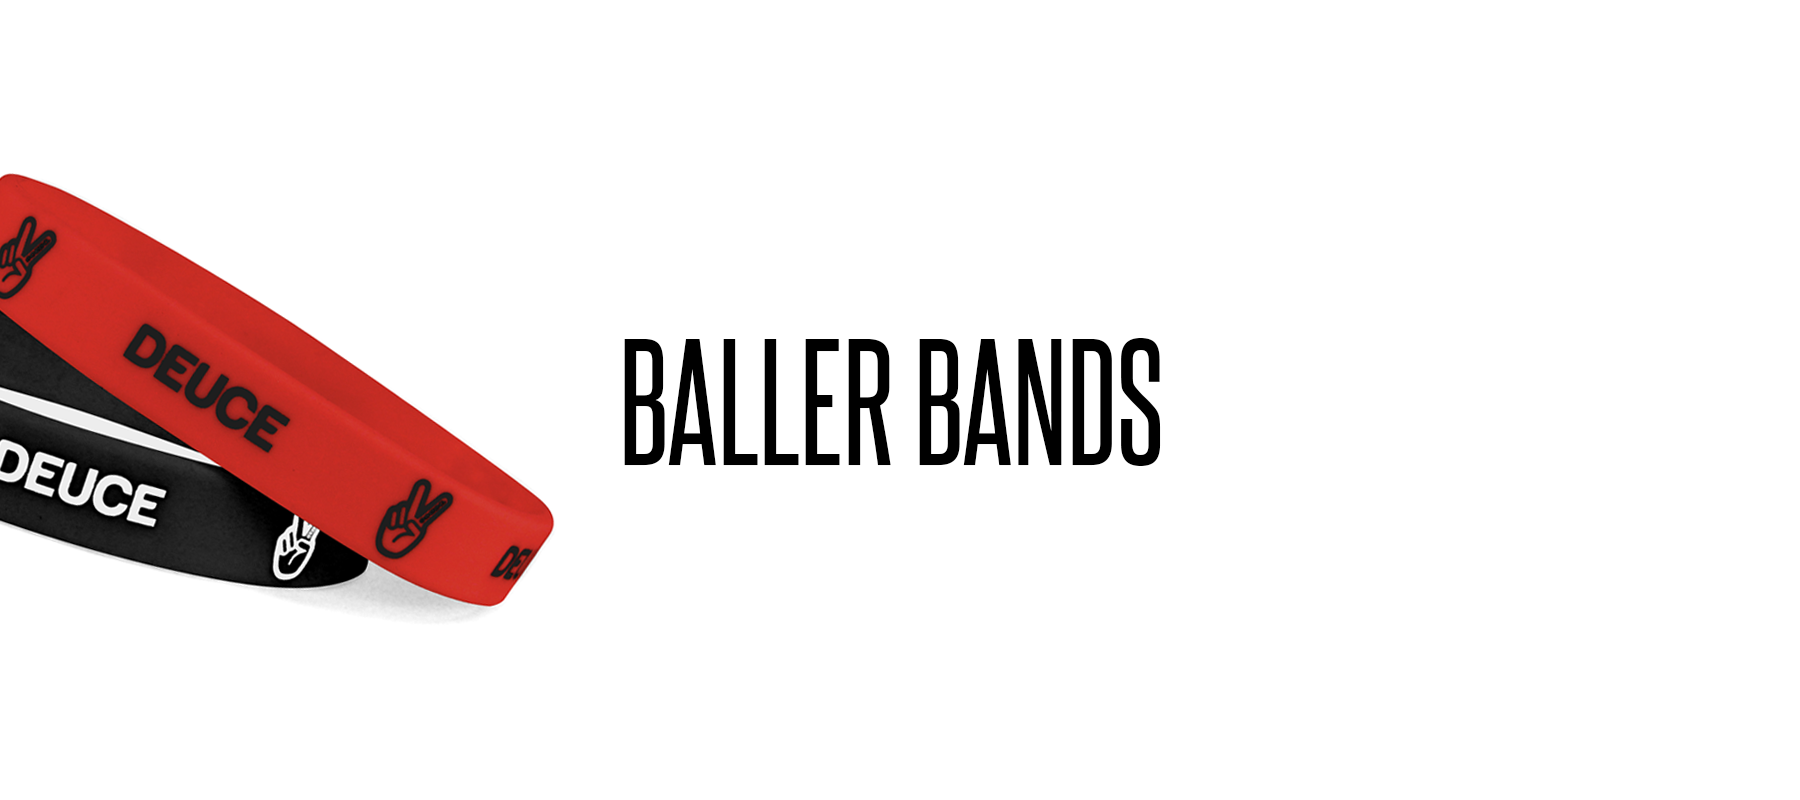 Free Baller Band